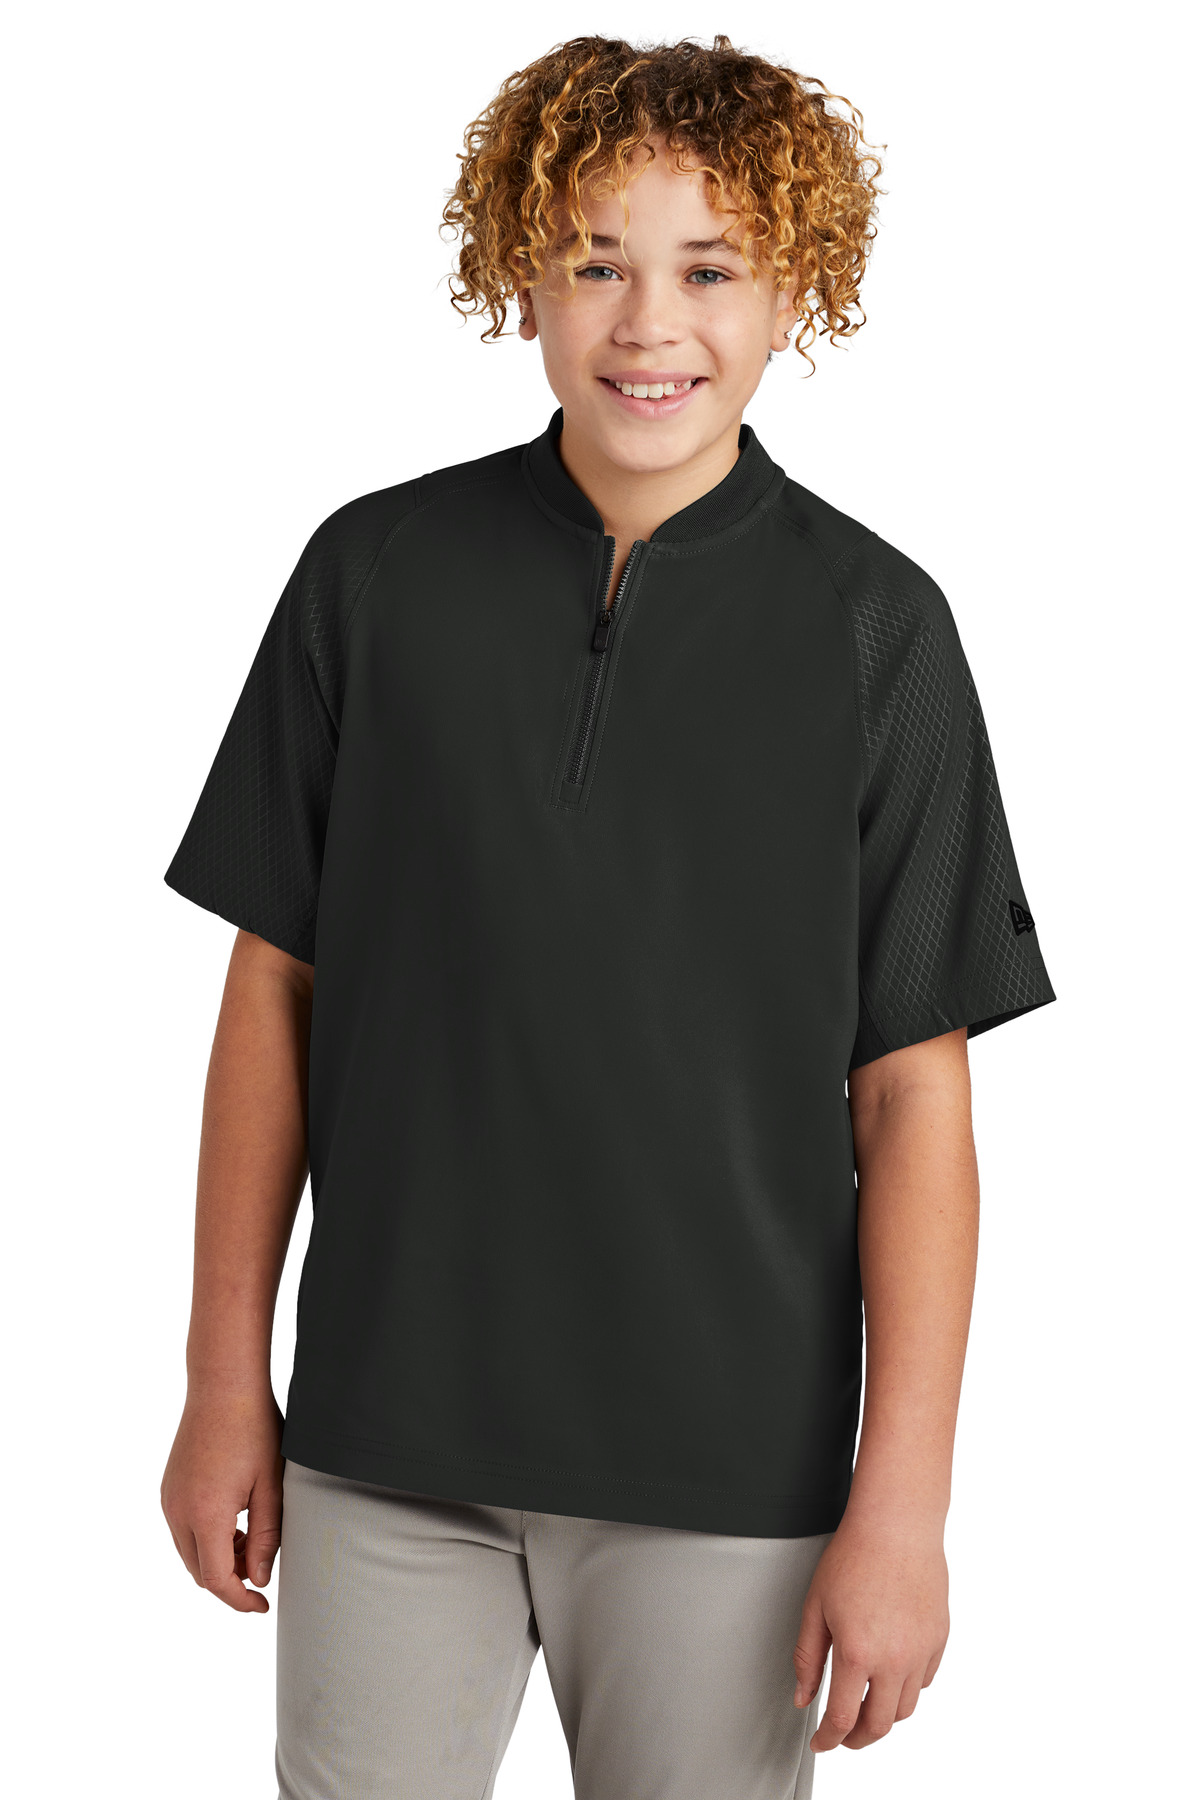 New Era Hospitality Youth Outerwear ® Youth Cage Short Sleeve 1/4-Zip Jacket.-New Era